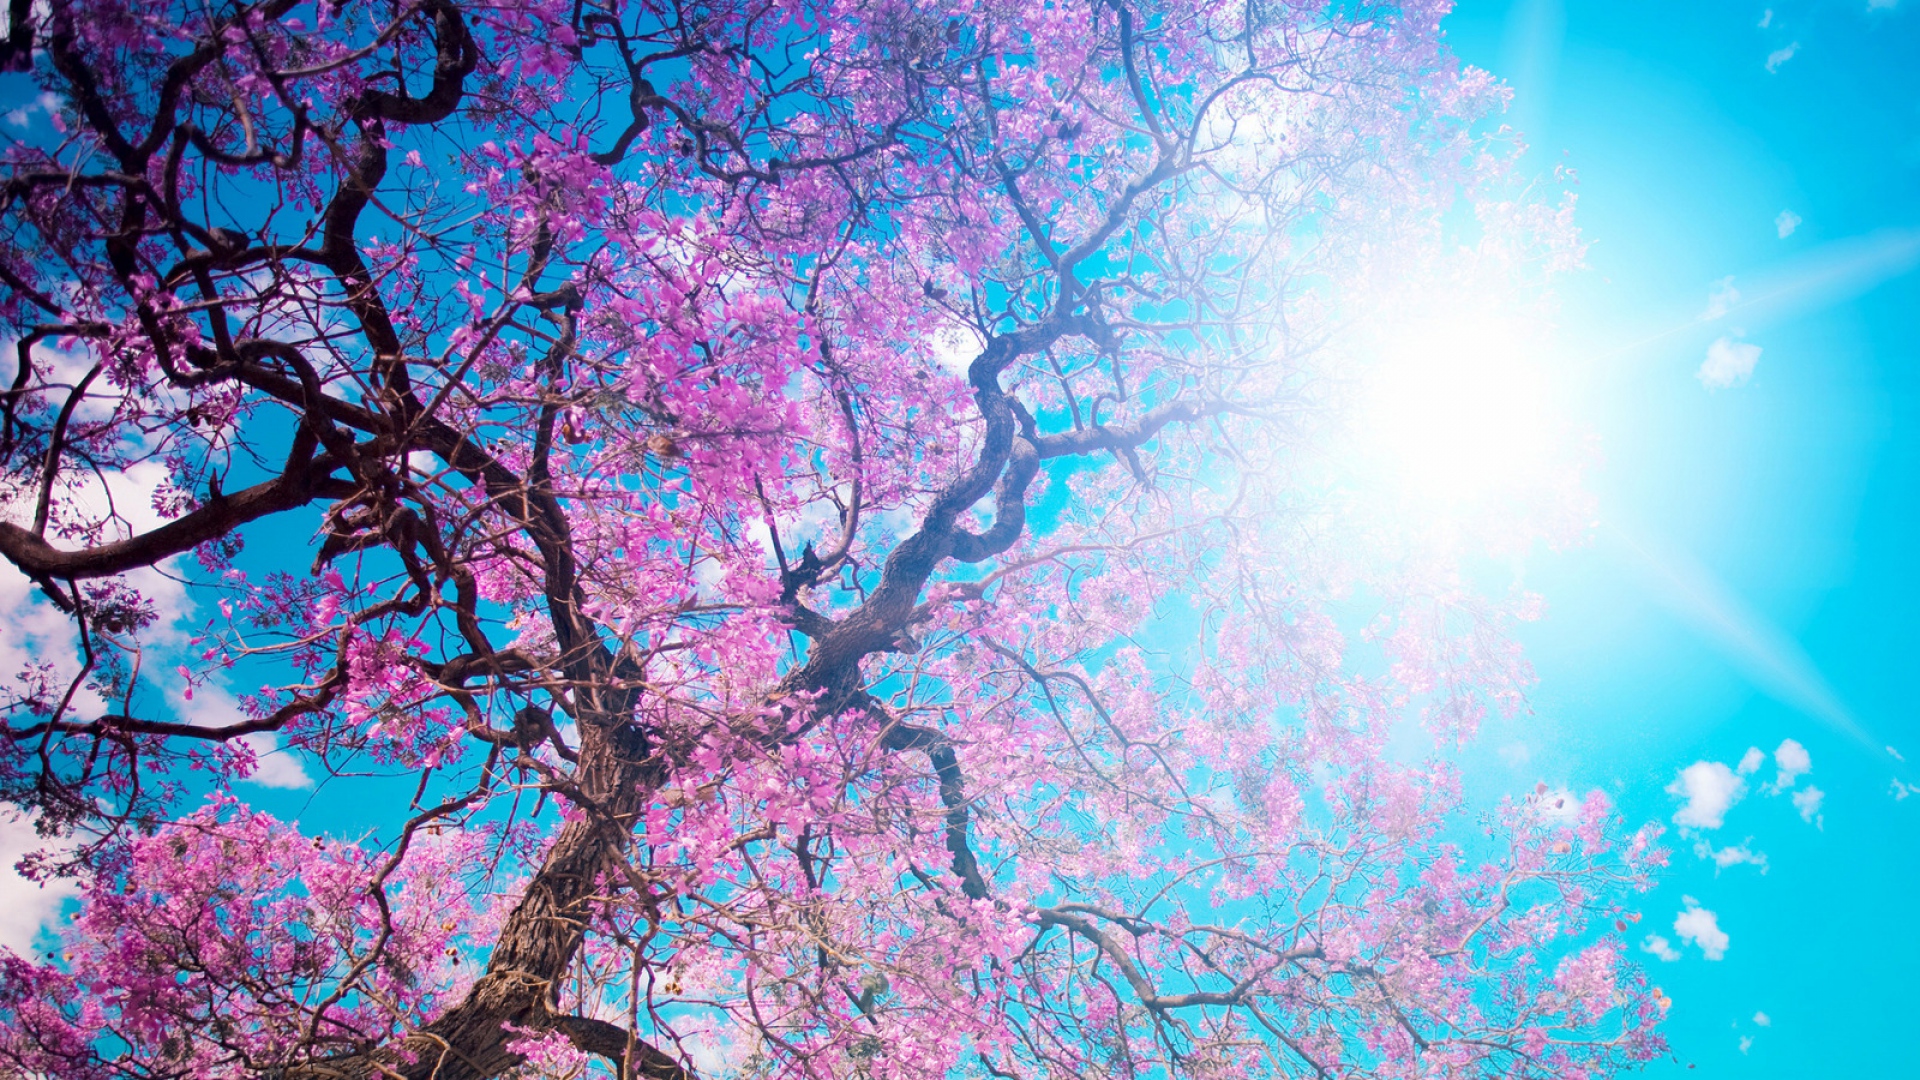 Wallpaper O Hanami Blossom Festival And To Enjoy The Cherry